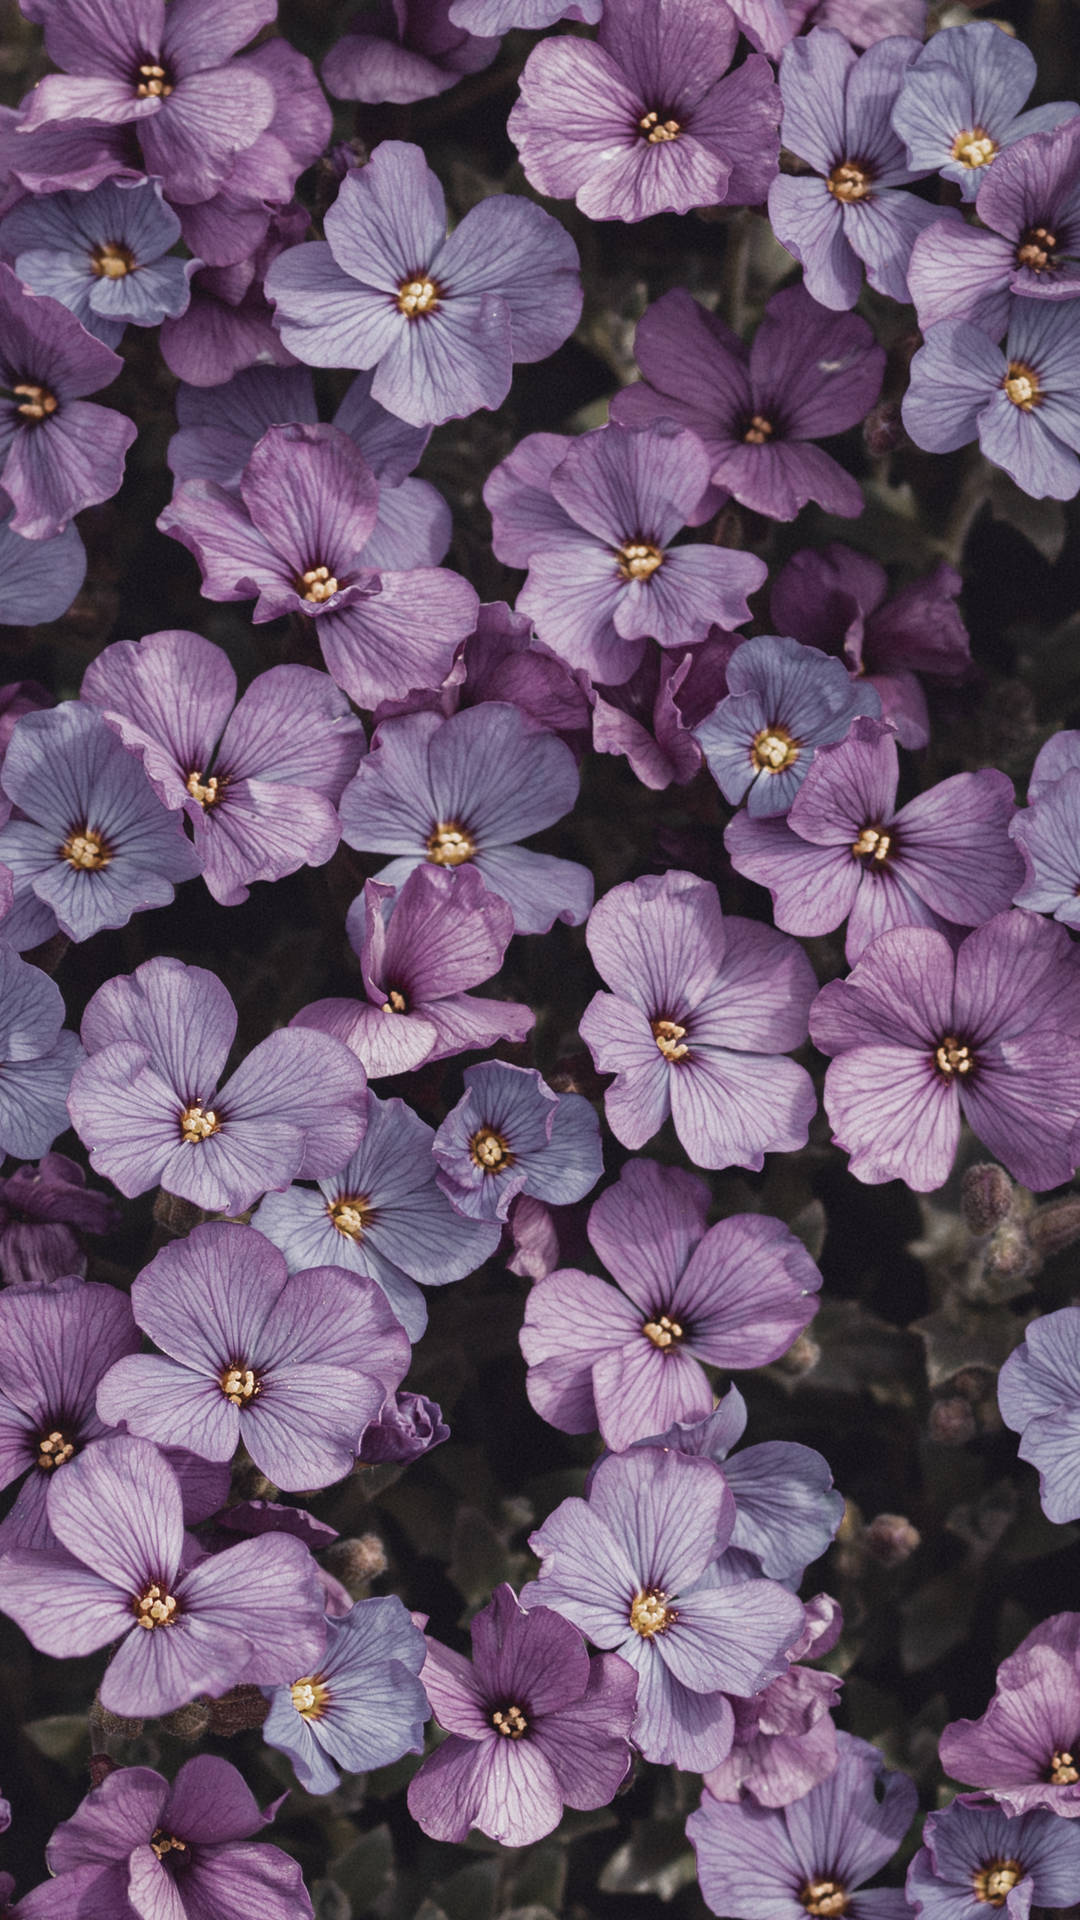 A beautiful aesthetic purple flower blooming in a sunlit garden. Wallpaper